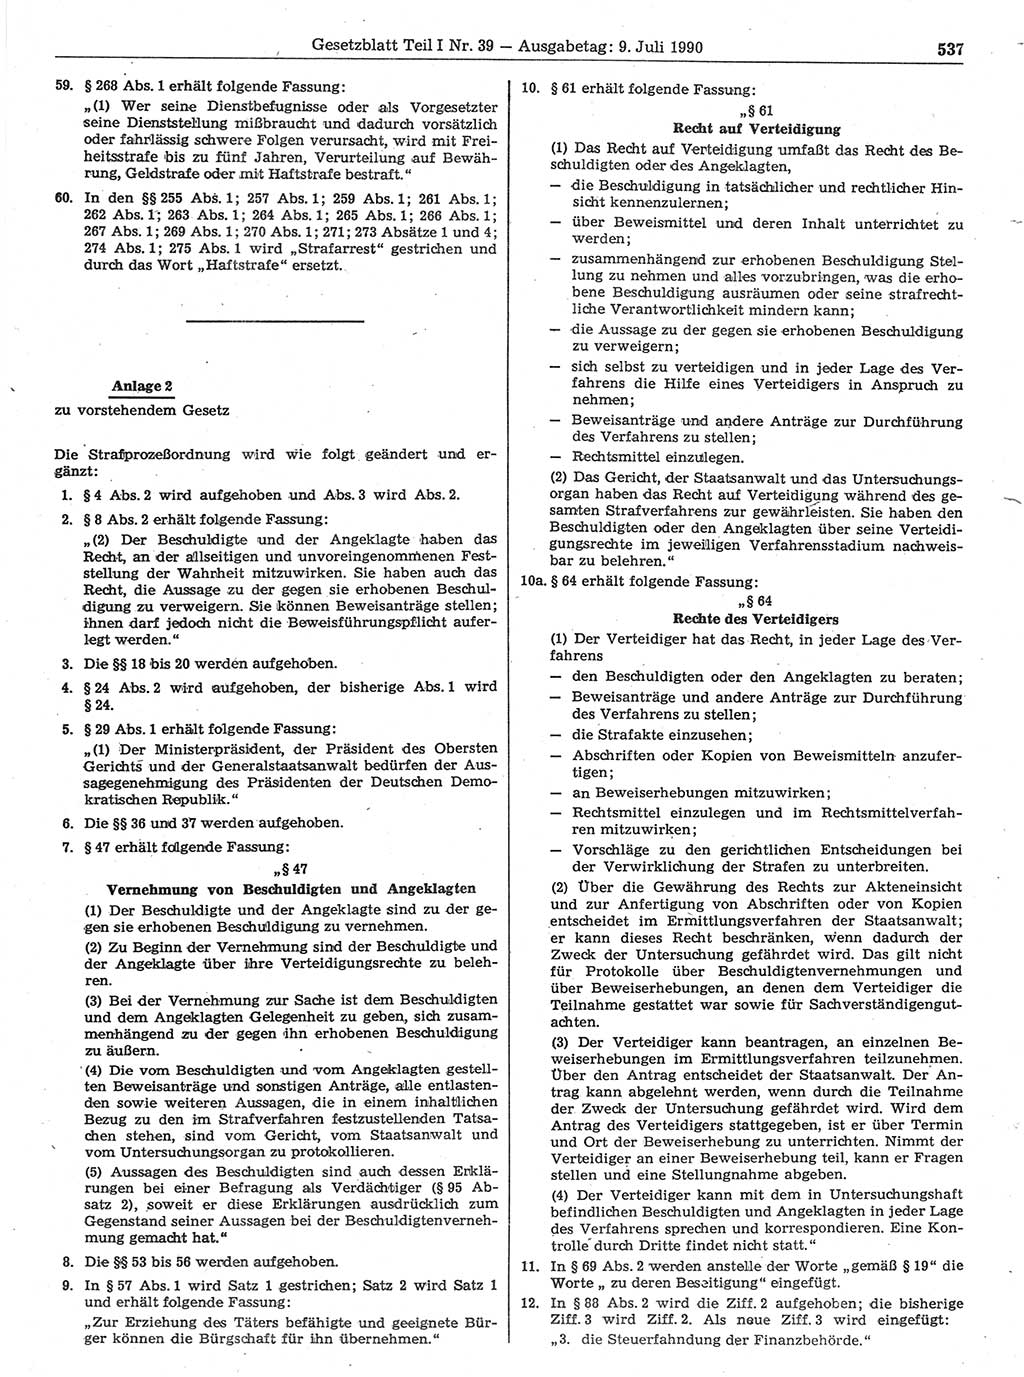 Gesetzblatt (GBl.) der Deutschen Demokratischen Republik (DDR) Teil Ⅰ 1990, Seite 537 (GBl. DDR Ⅰ 1990, S. 537)